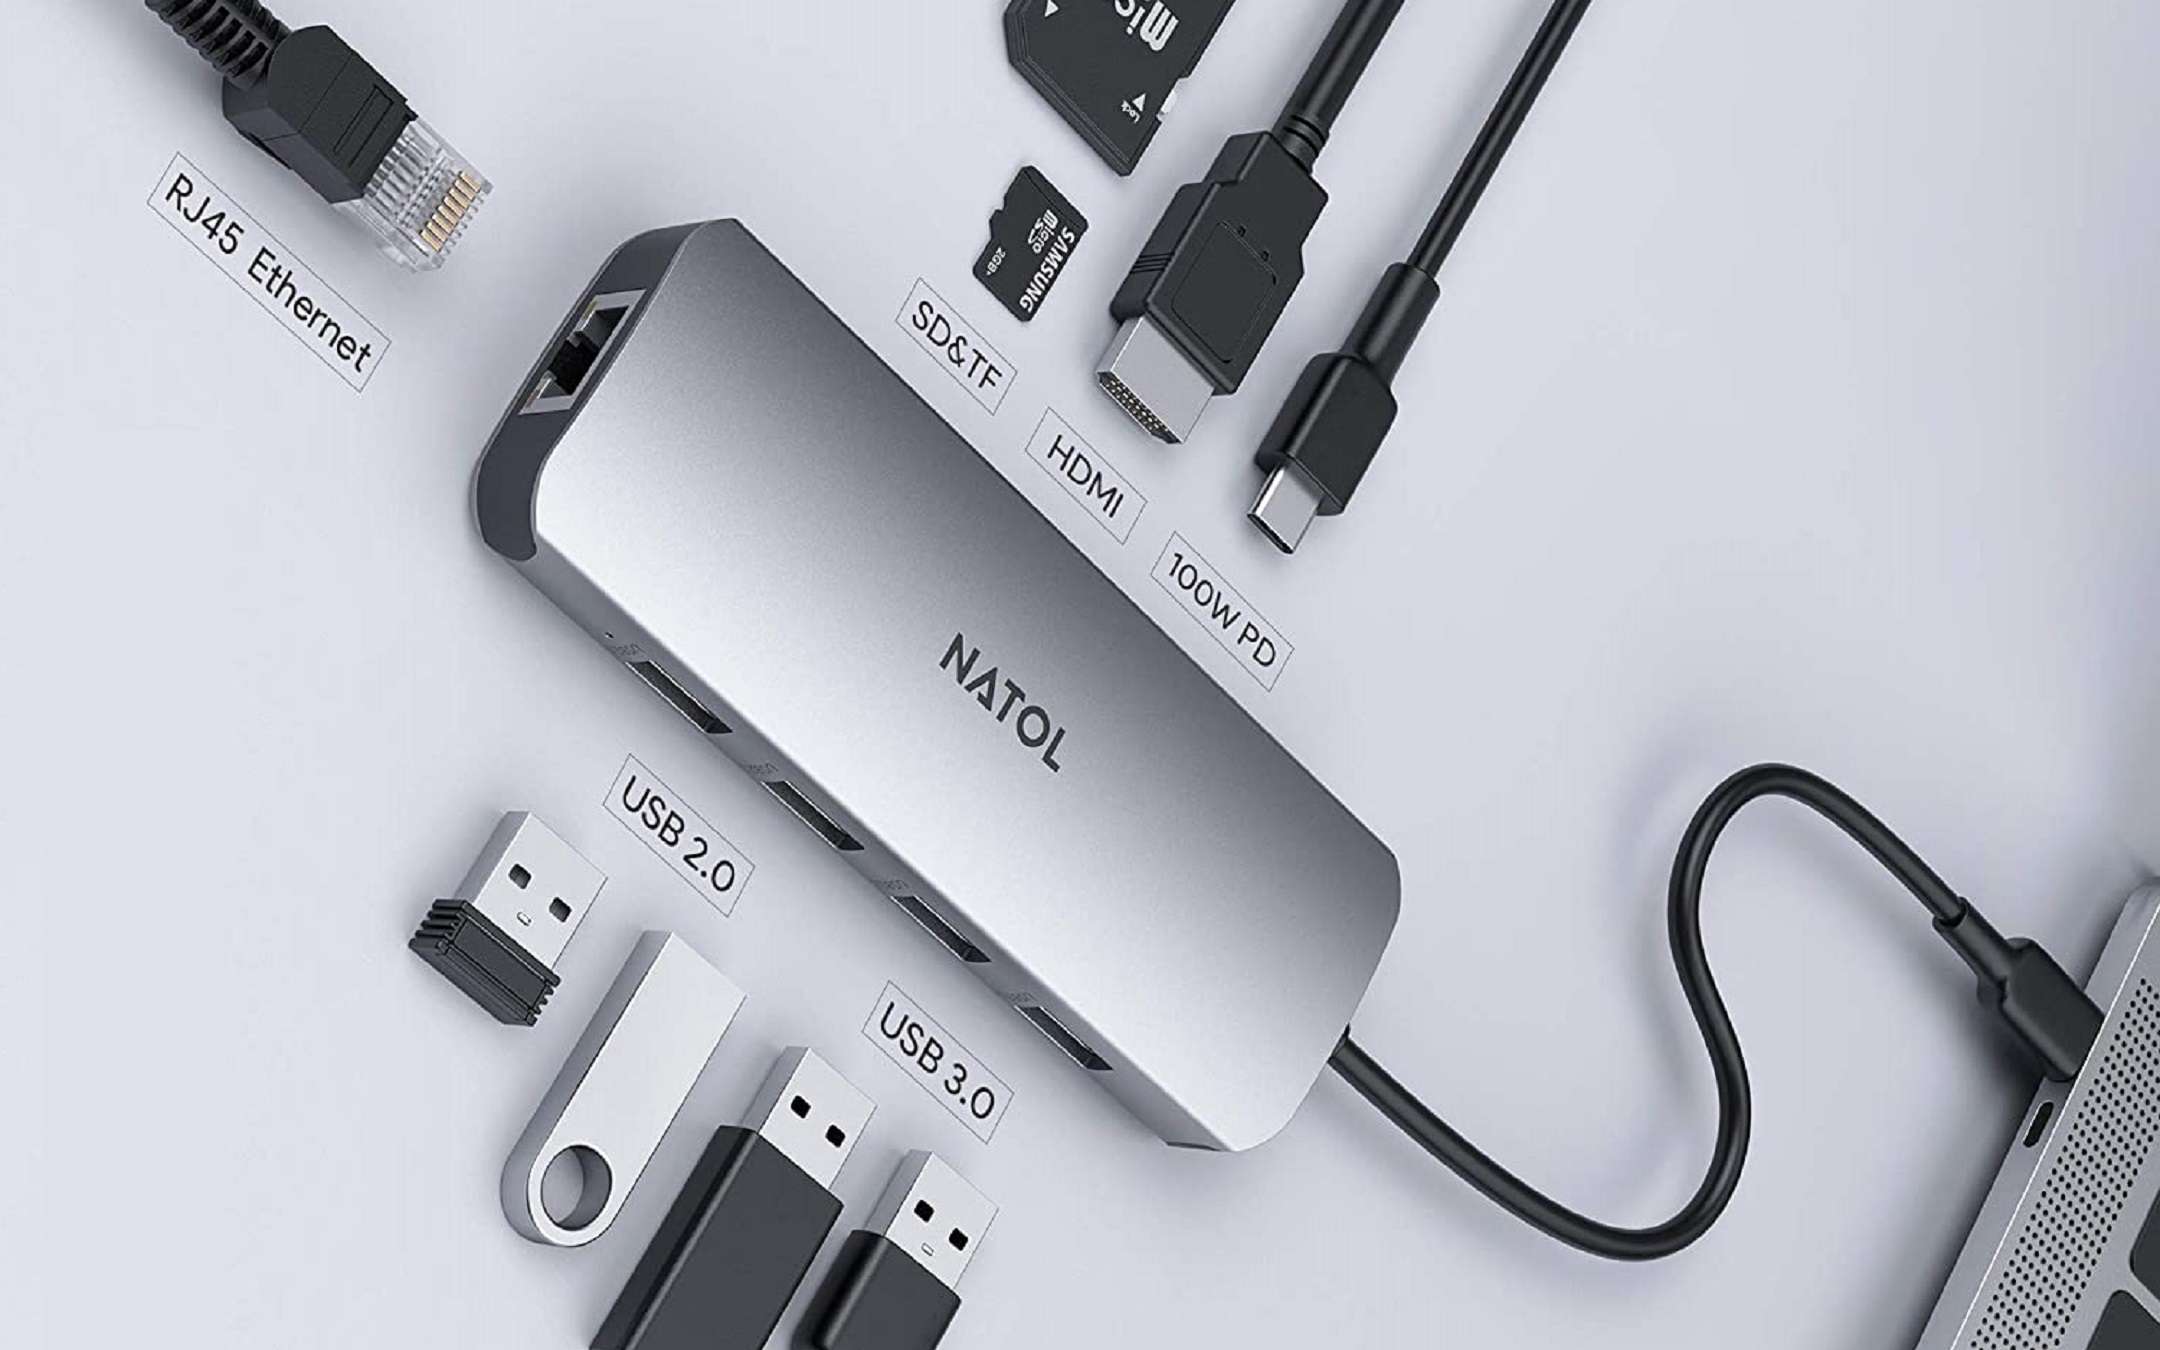 Hub USB-C 9 in 1 a PREZZO STRACCIATO: solo 25,99 EURO